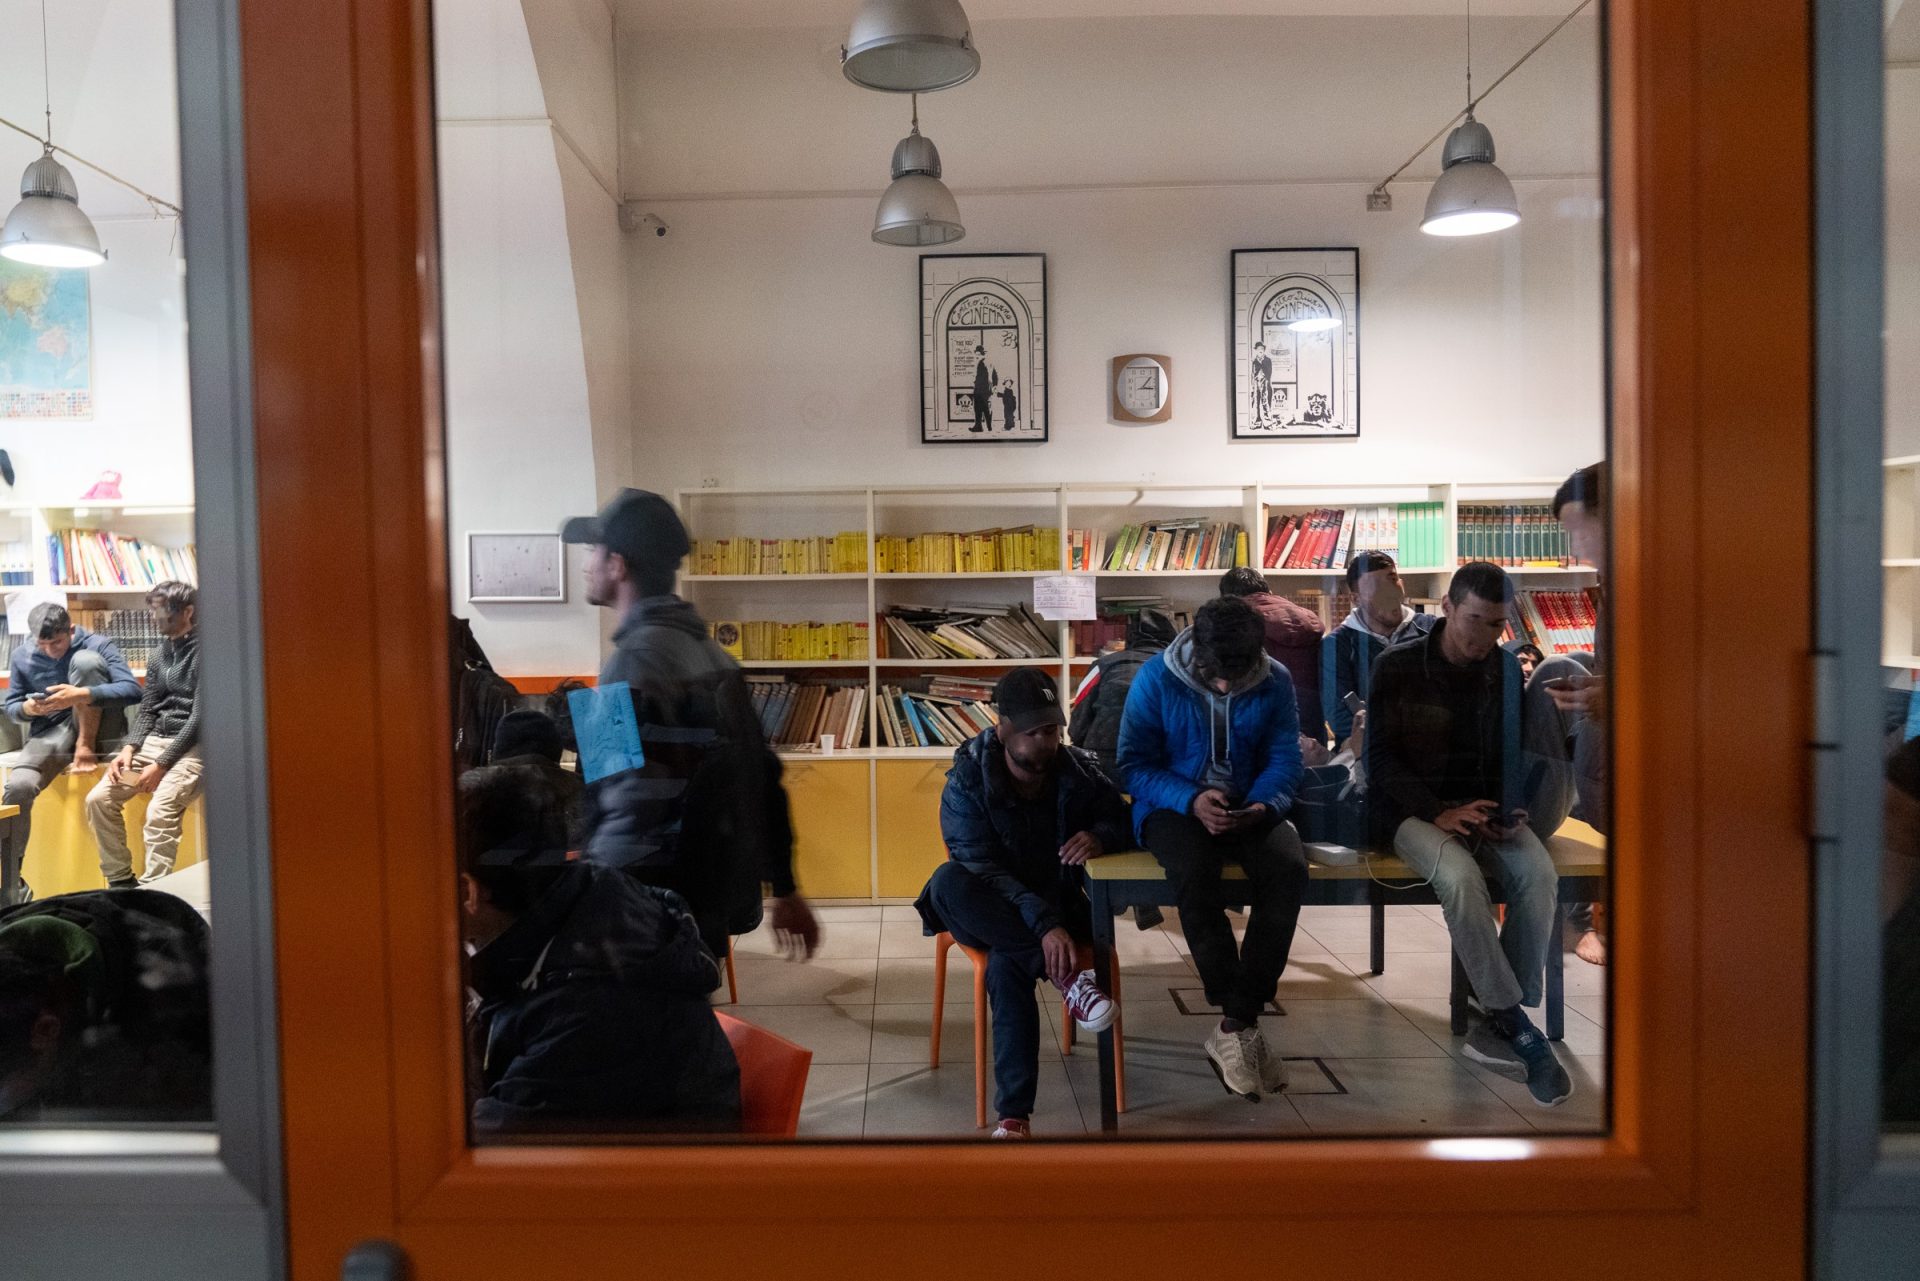 Attraverso un vetro, si vedono alcune persone nel centro diurno, sedute su un tavolo. Sullo sfondo, una libreria e dei quadri 